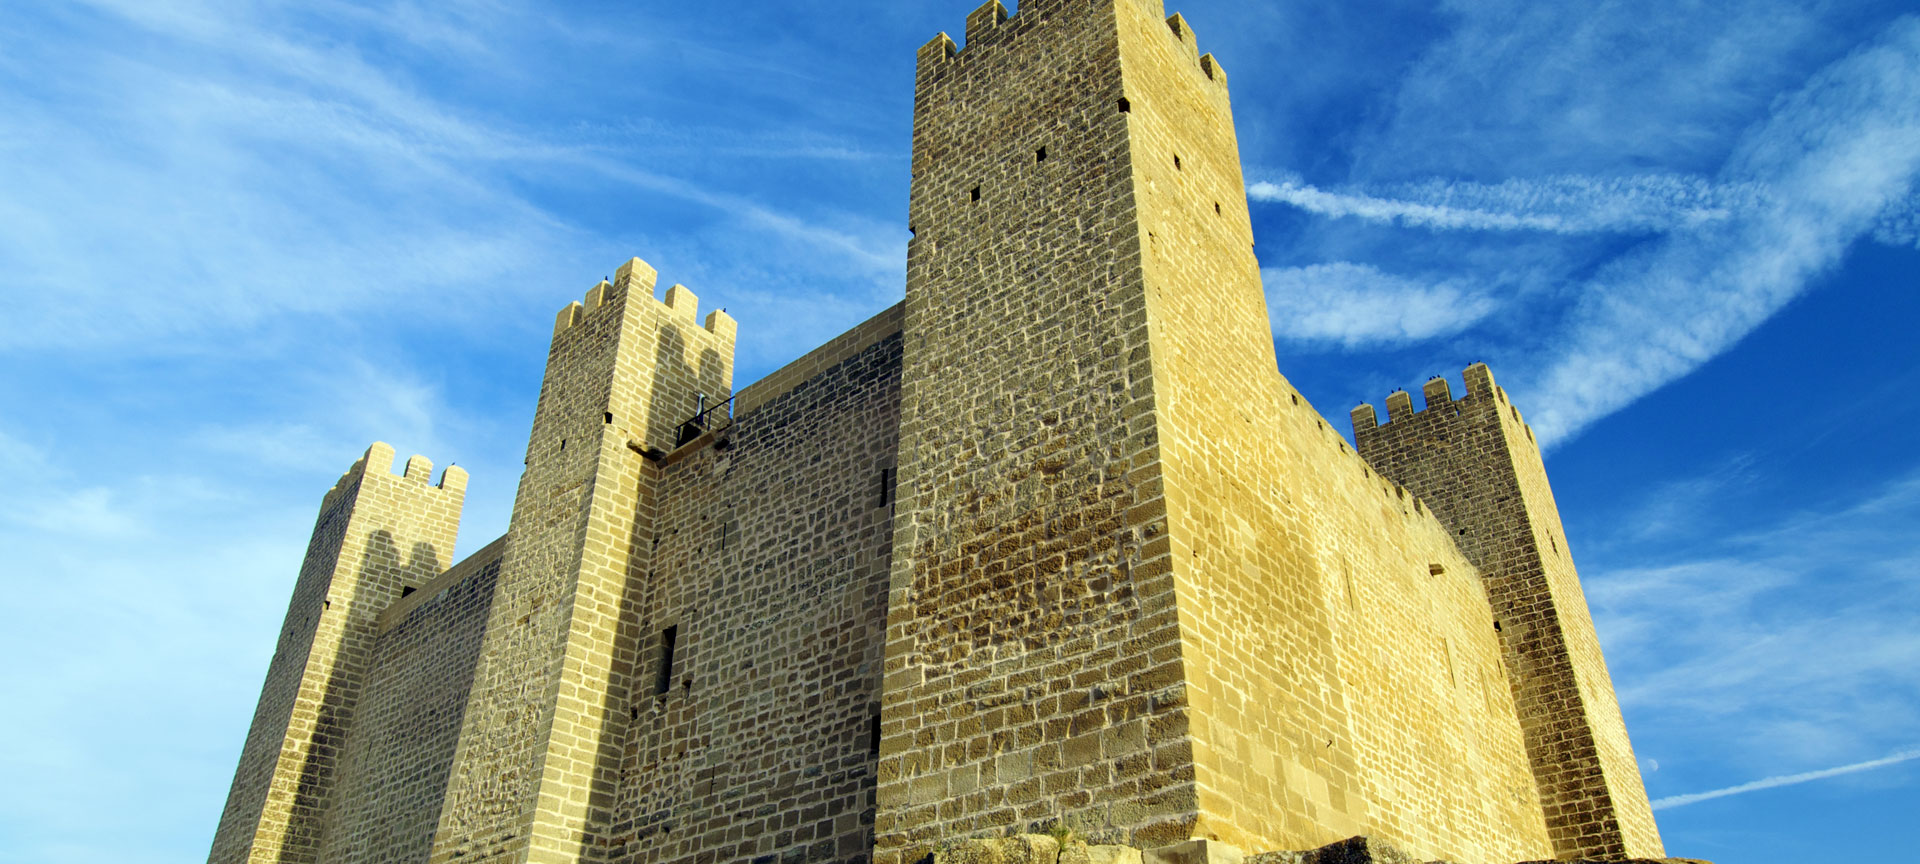 Middeleeuws kasteel tegen blauwe lucht.